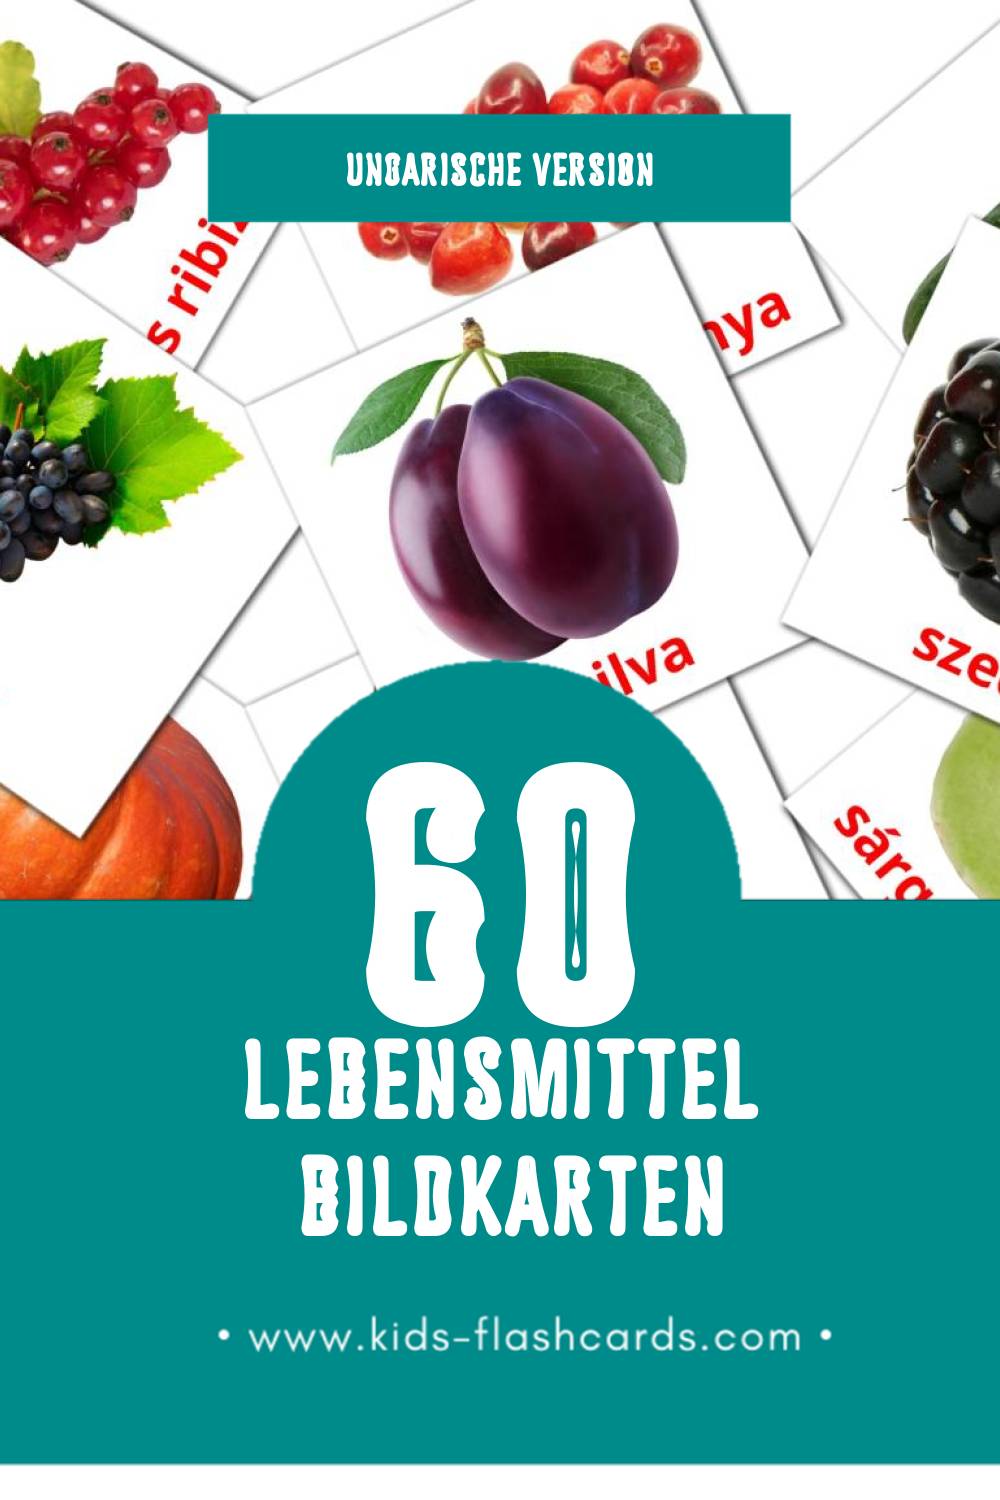 Visual Élelmiszer Flashcards für Kleinkinder (60 Karten in Ungarisch)